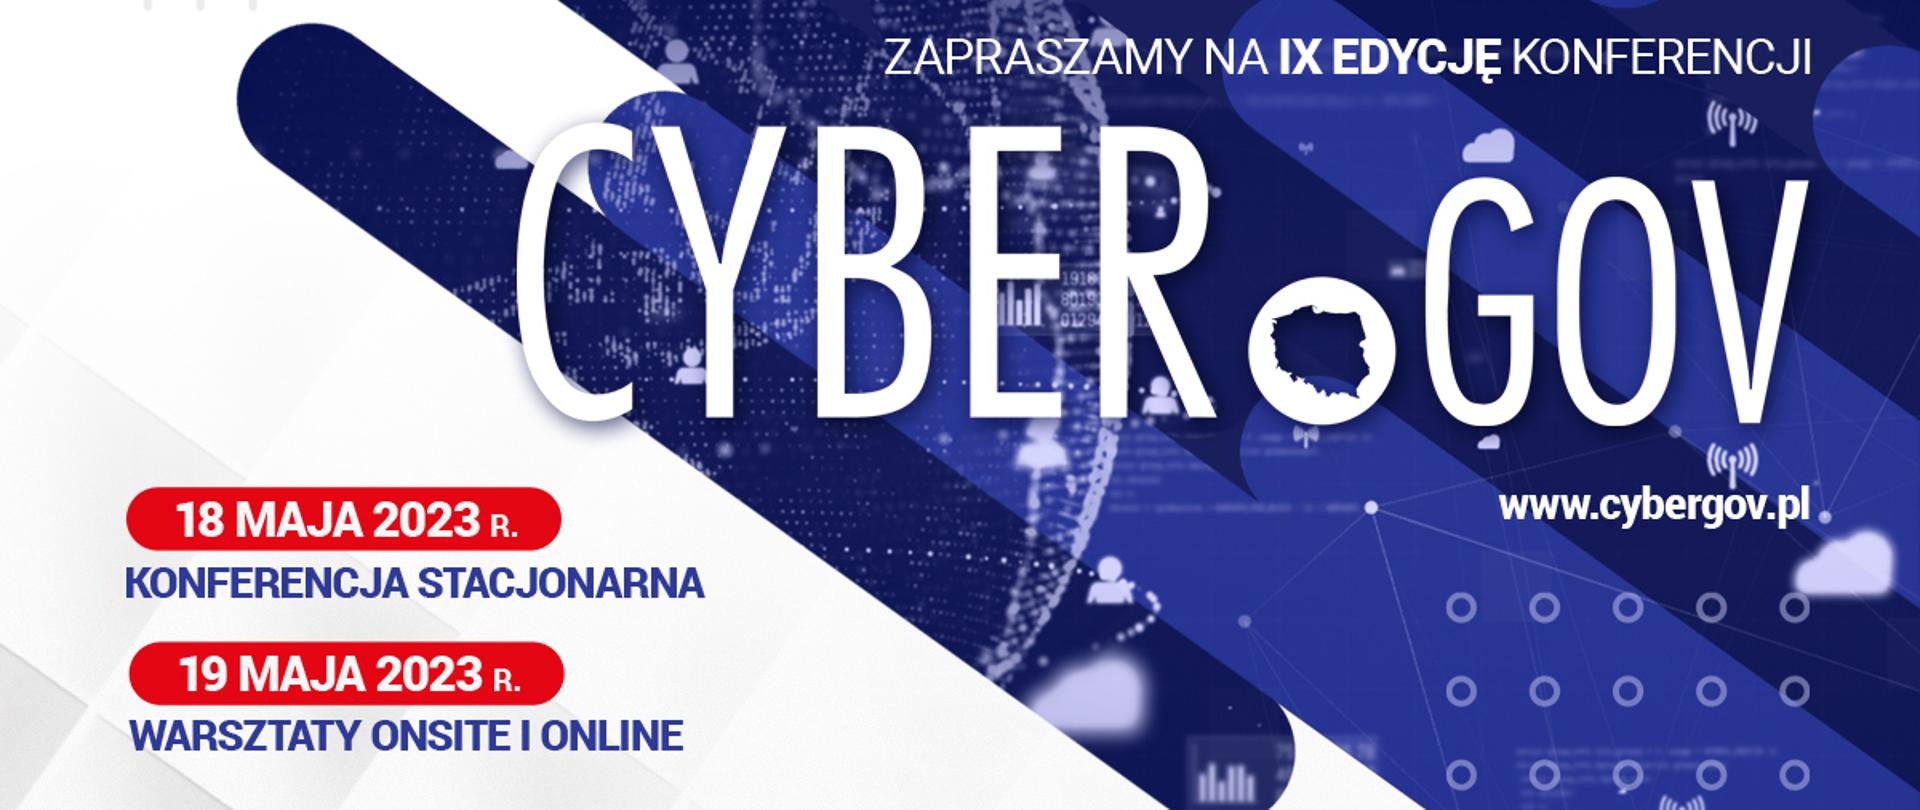 Plakat konferencji CyberGov 2023 18 maja konferencja stacjonarna 19 maja onsite i online. Zapraszamy na 9 edycję konferencji cybergov 